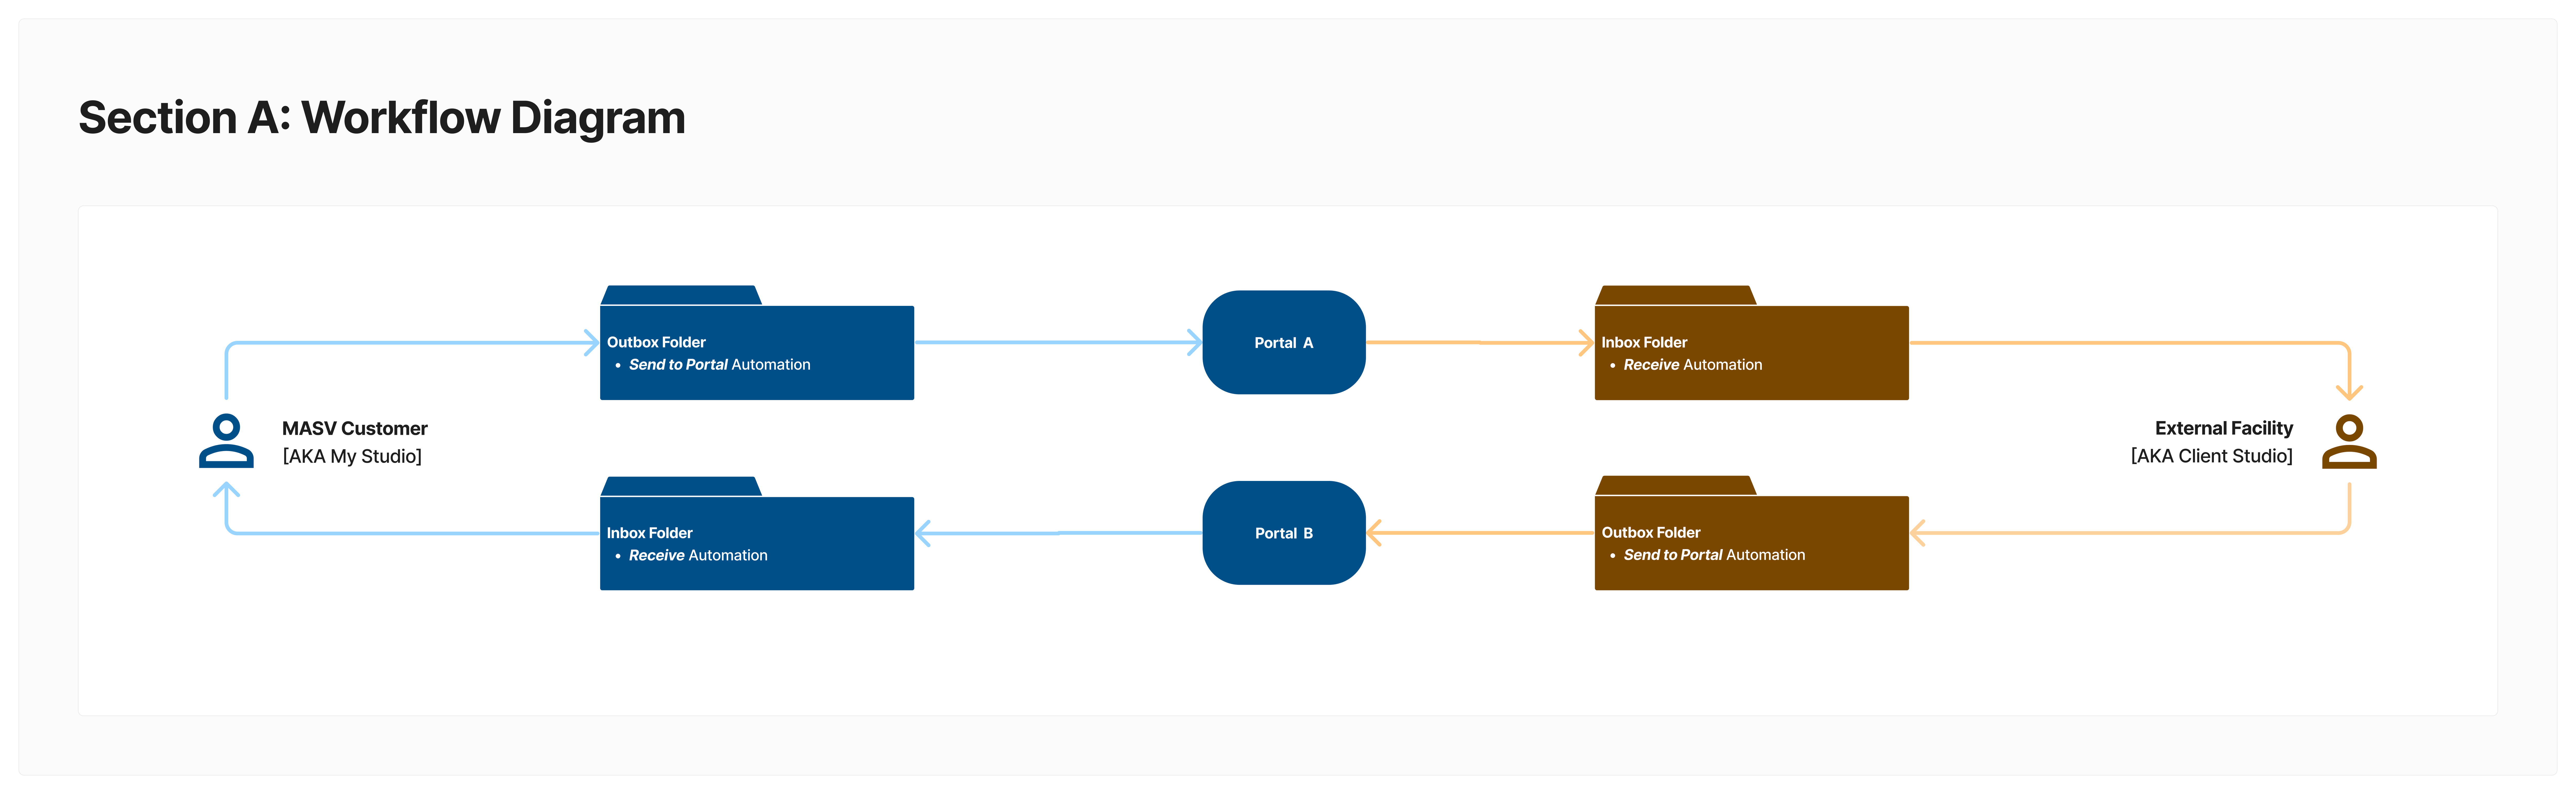 Ein Workflow-Diagramm